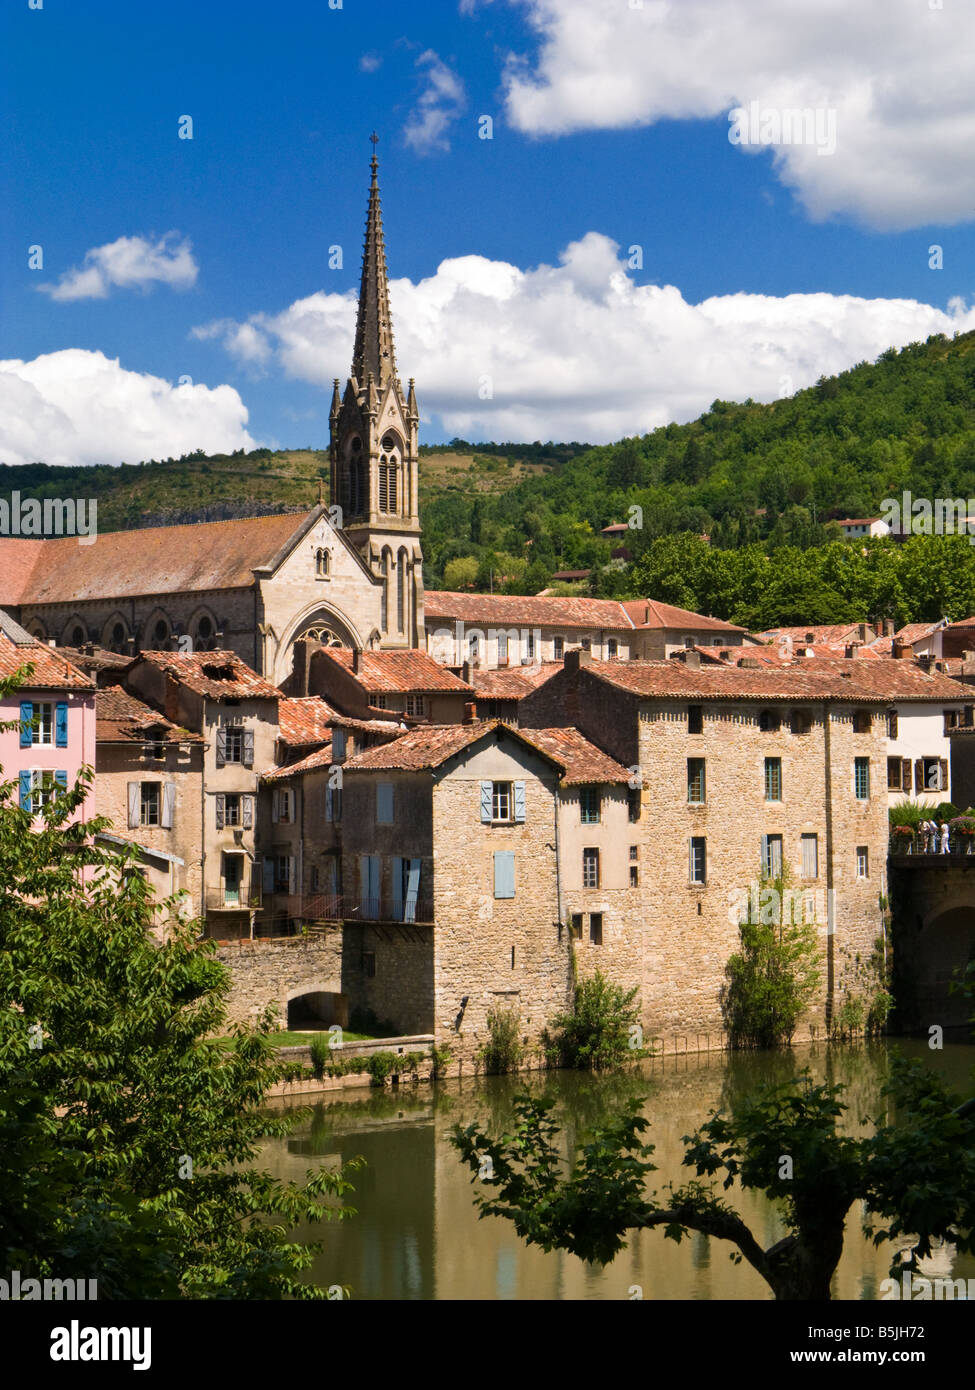 St Antonin Noble Val, Tarn et Garonne, France, Europe Stock Photo